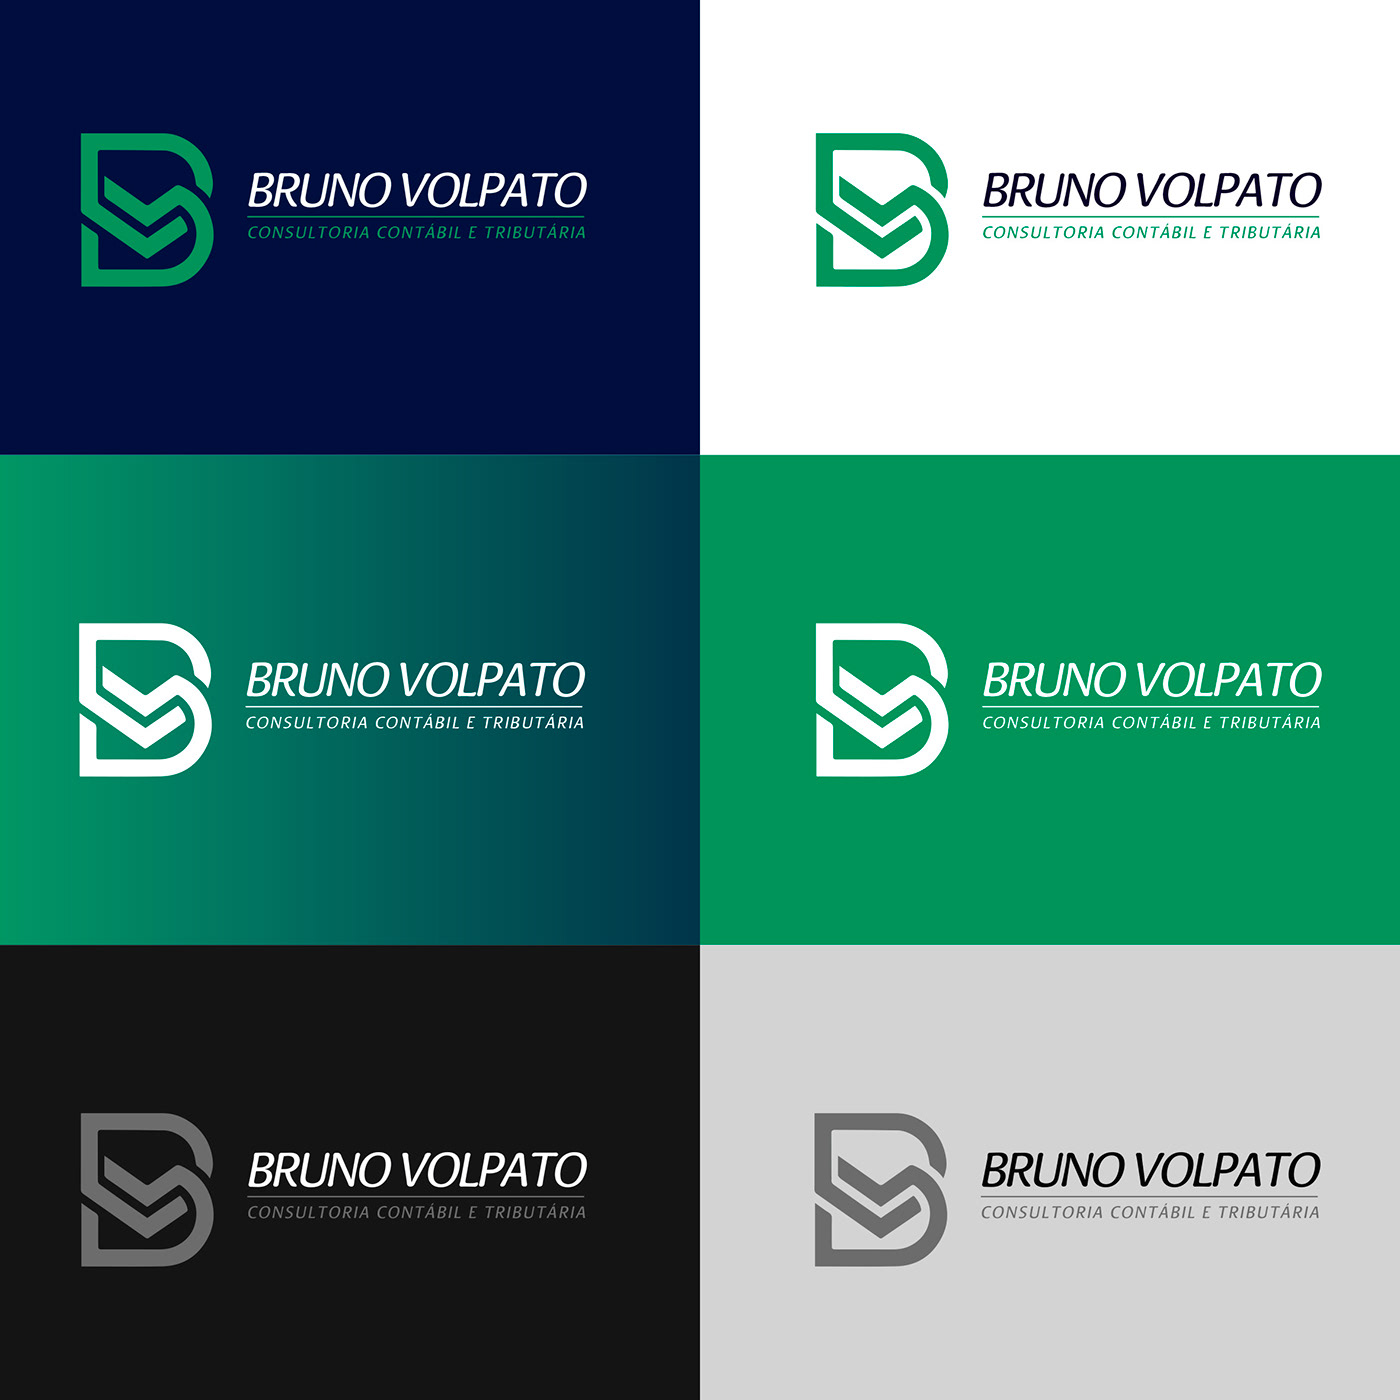 branding  consultoria contabilidade desing identidade visual logo Logotype marca organização